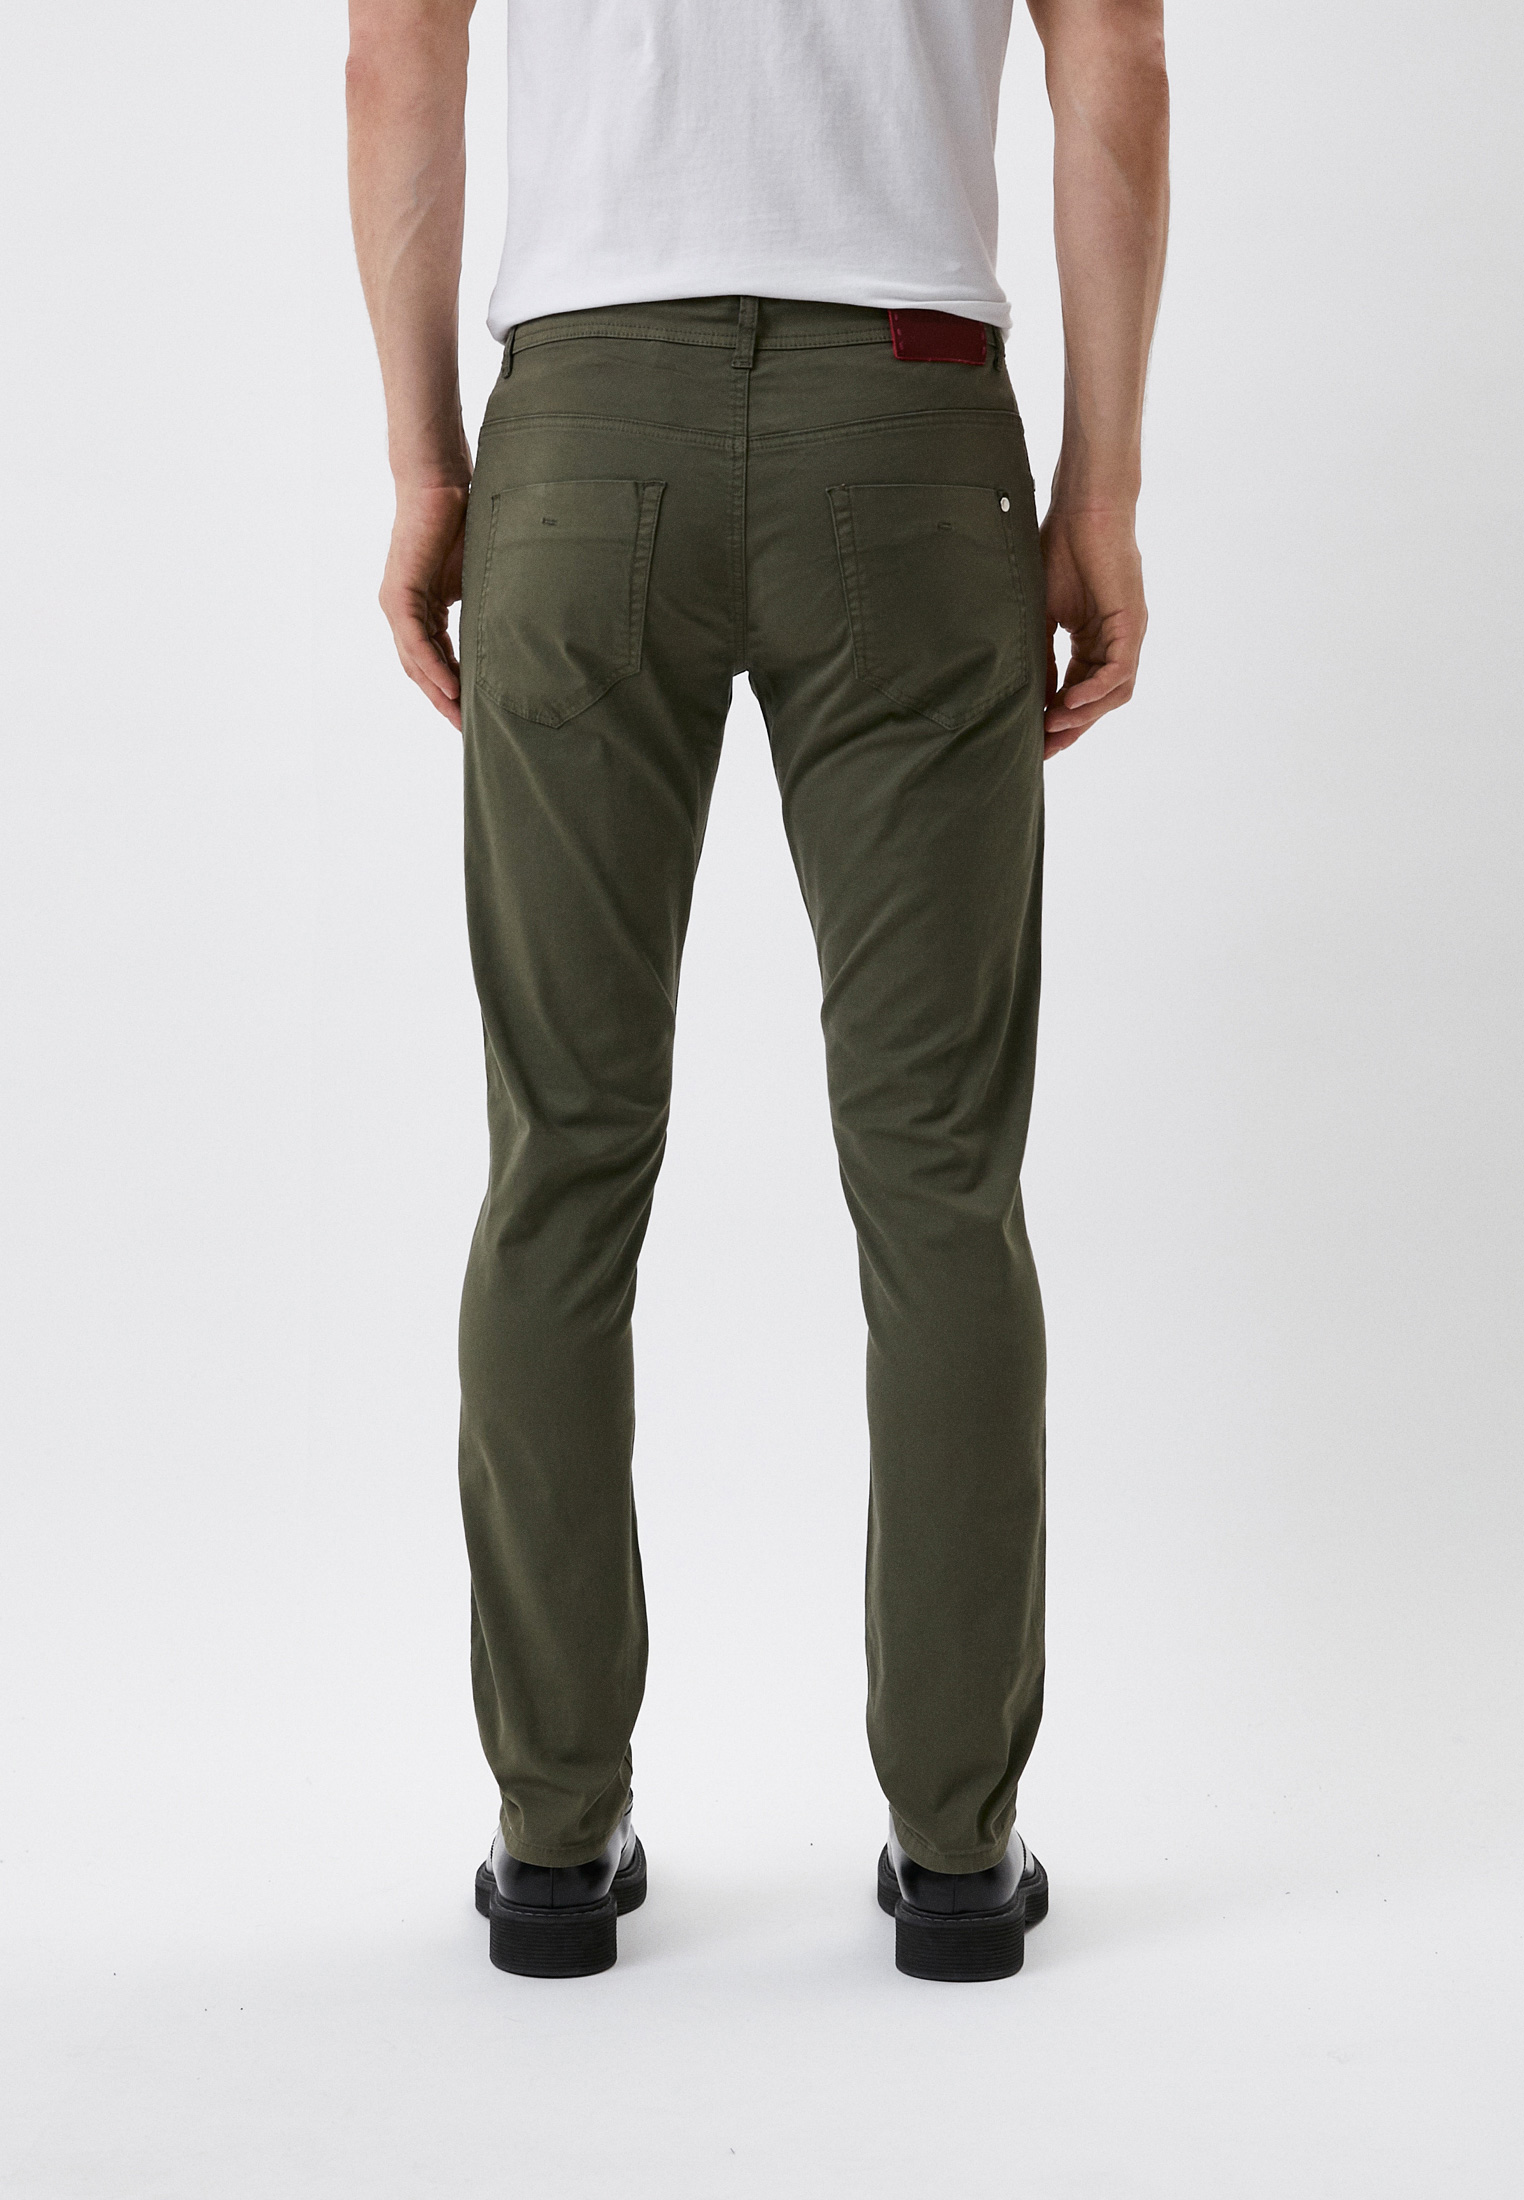 Мужские повседневные брюки Baldinini (Балдинини) MJ102: изображение 3